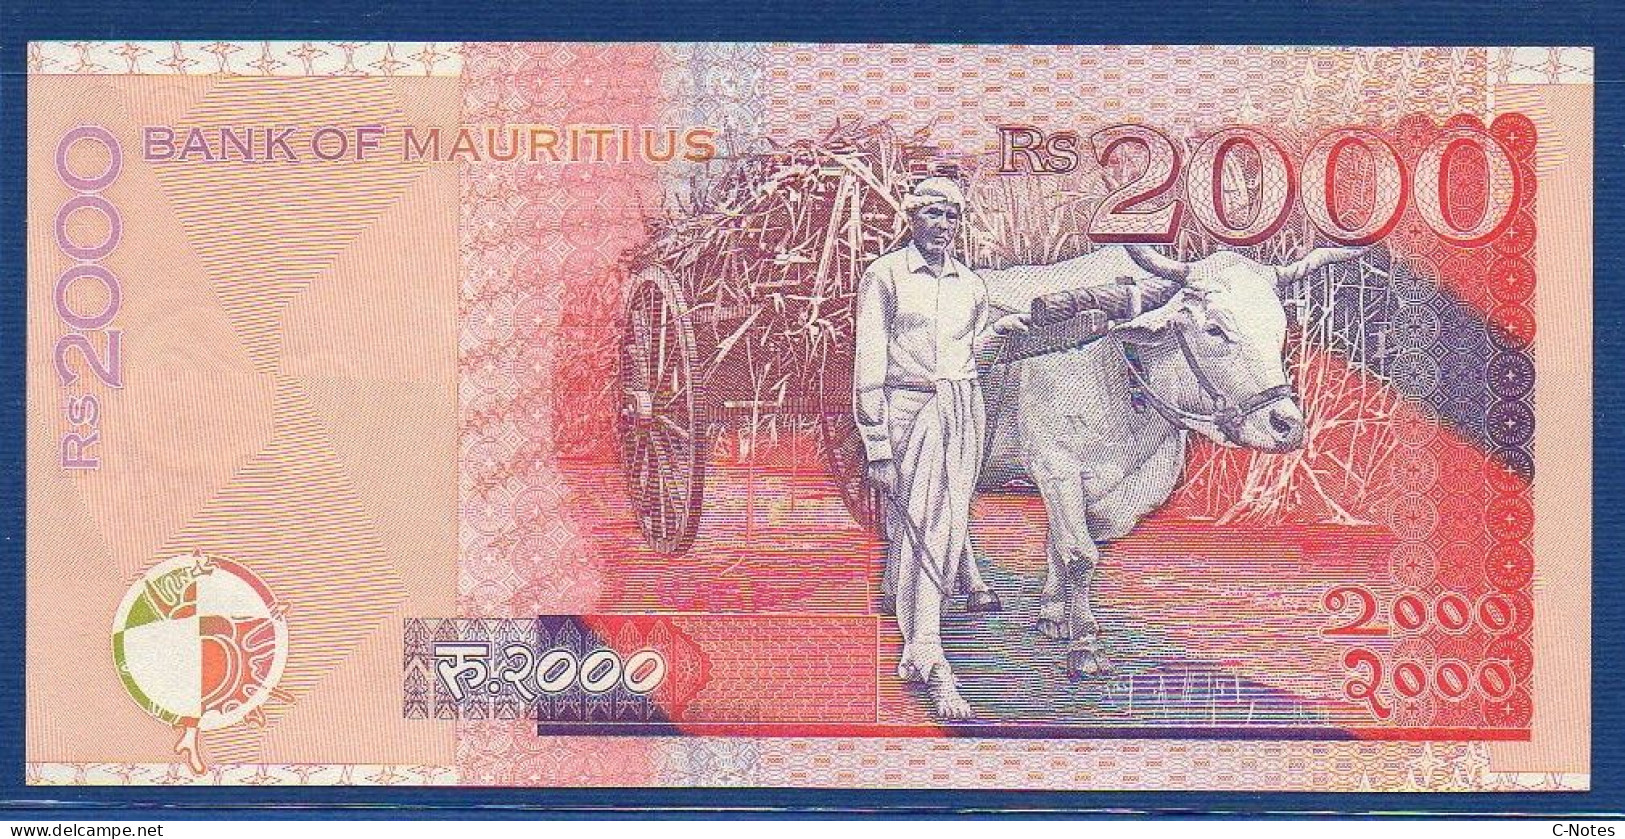 MAURITIUS - P.55 – 2000 Rupees 1999 UNC, Serie BR961539 - Mauritius